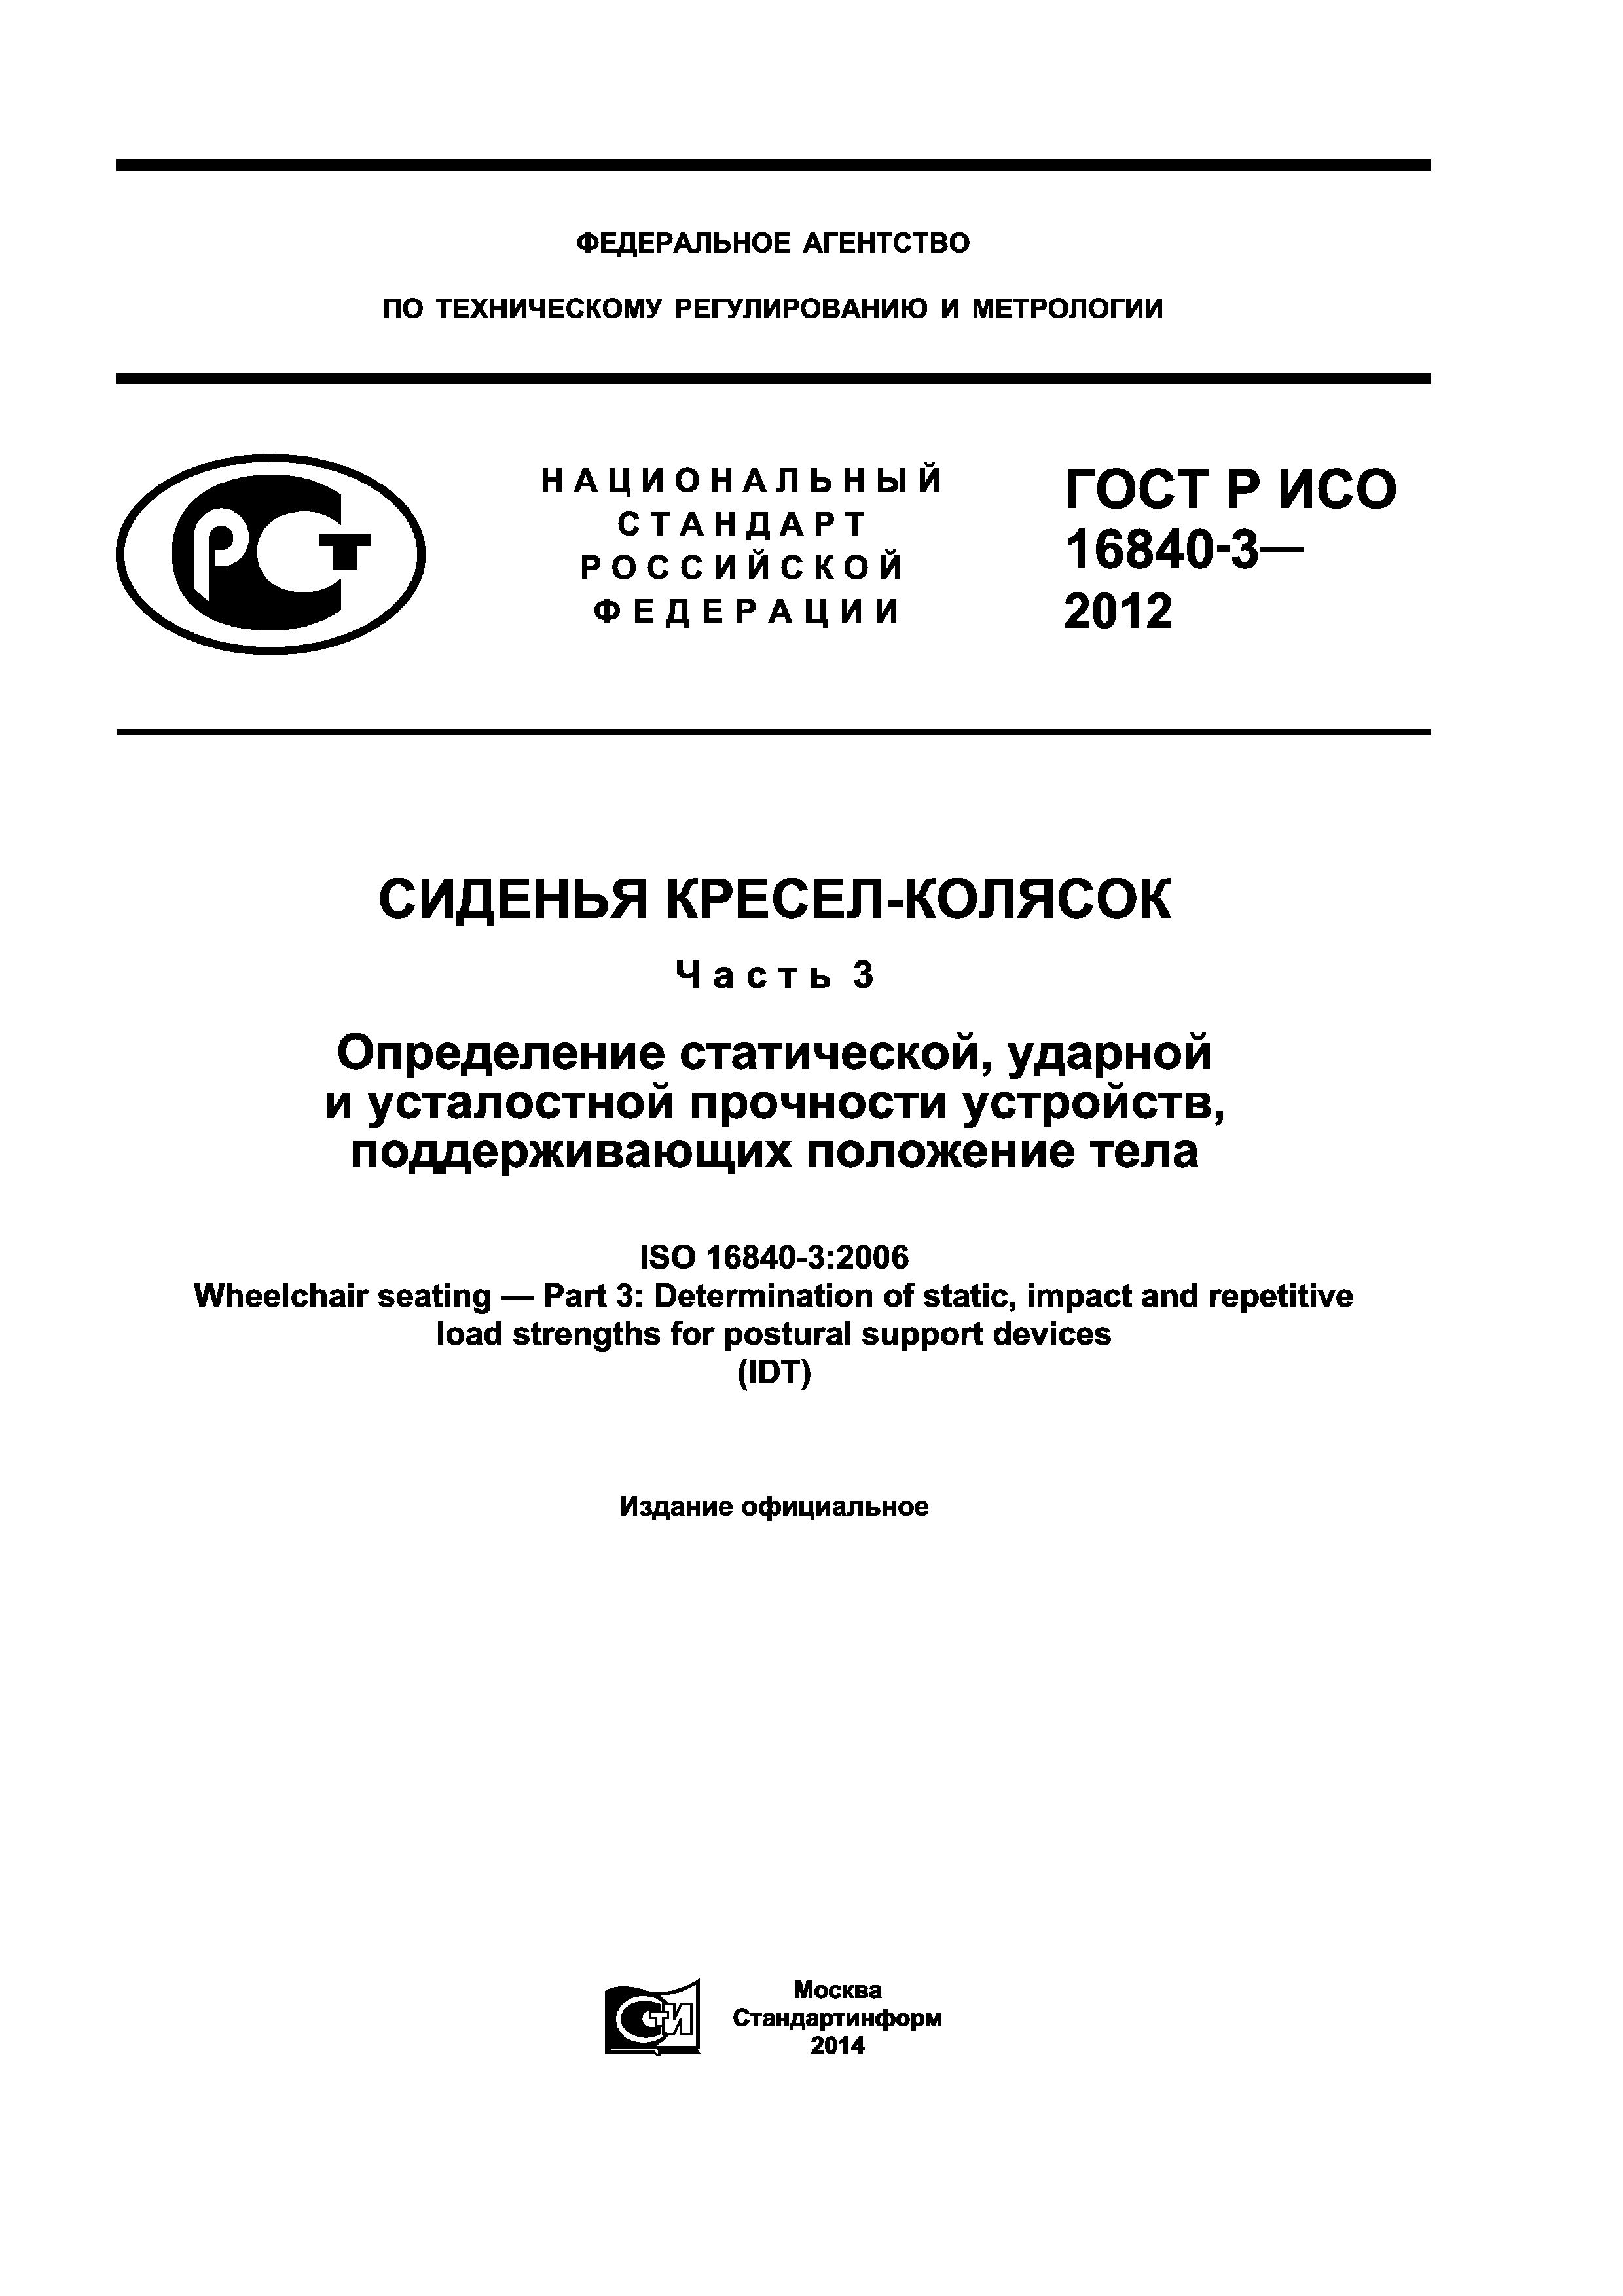 ГОСТ Р ИСО 16840-3-2012